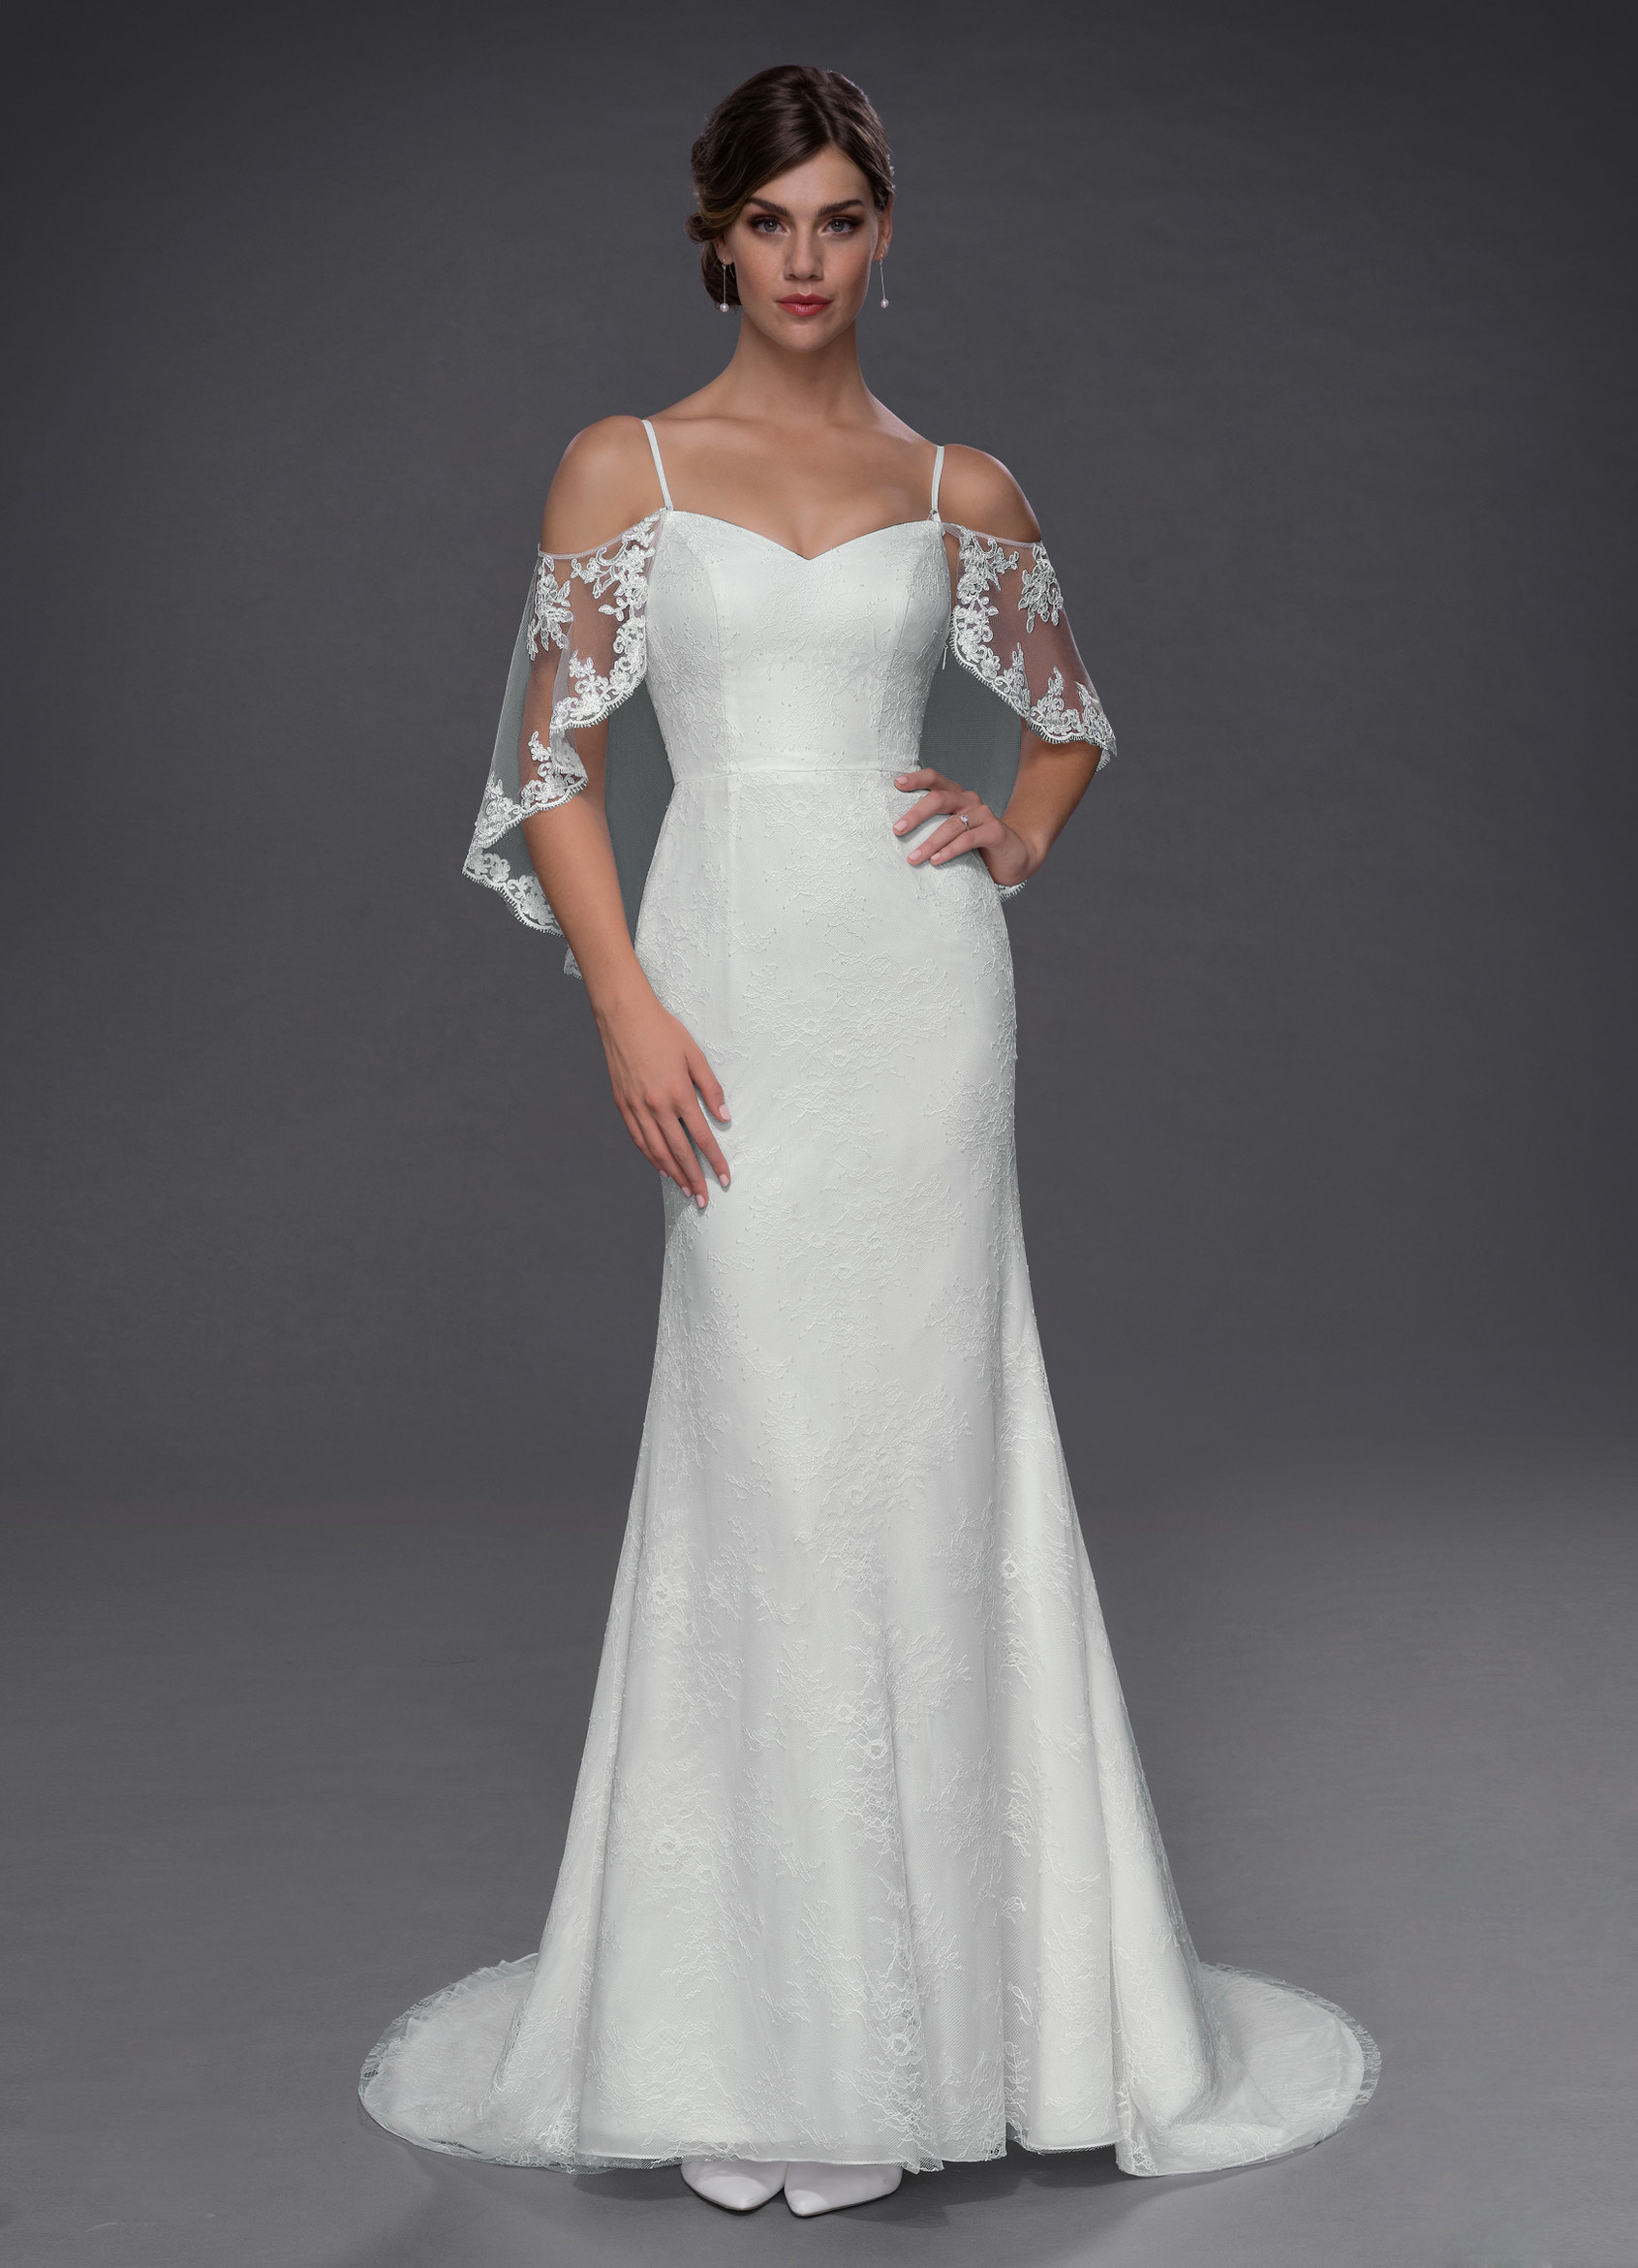 Azazie Phoenix BG Wedding Dress - White | Azazie